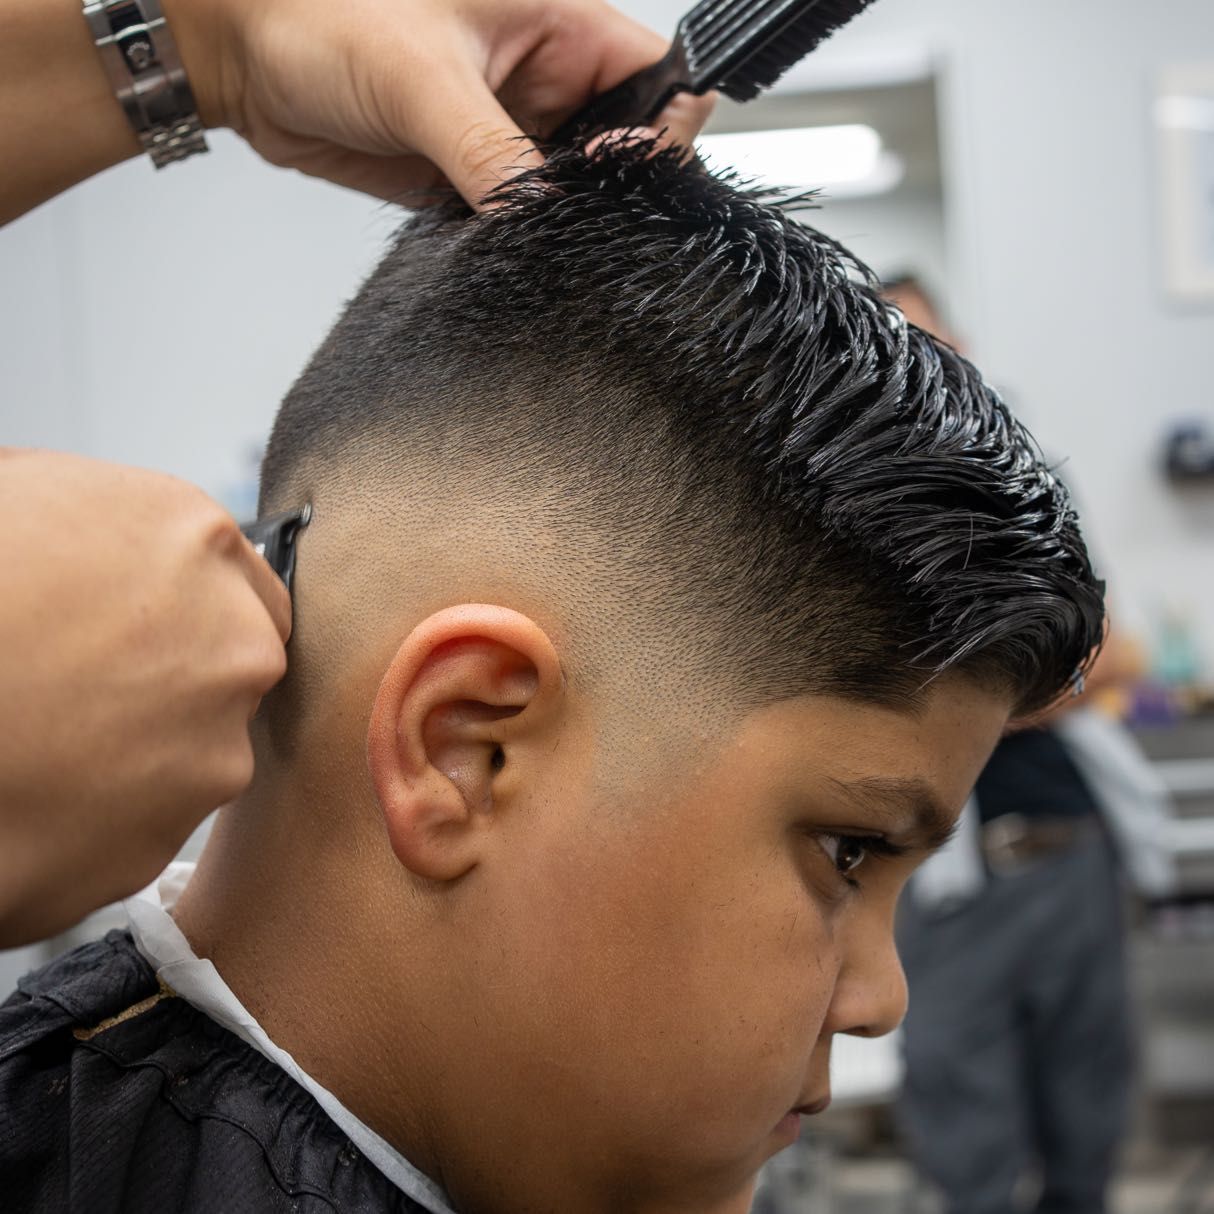 Kids Haircut 10yrs and under $35 (no kids under 6) portfolio